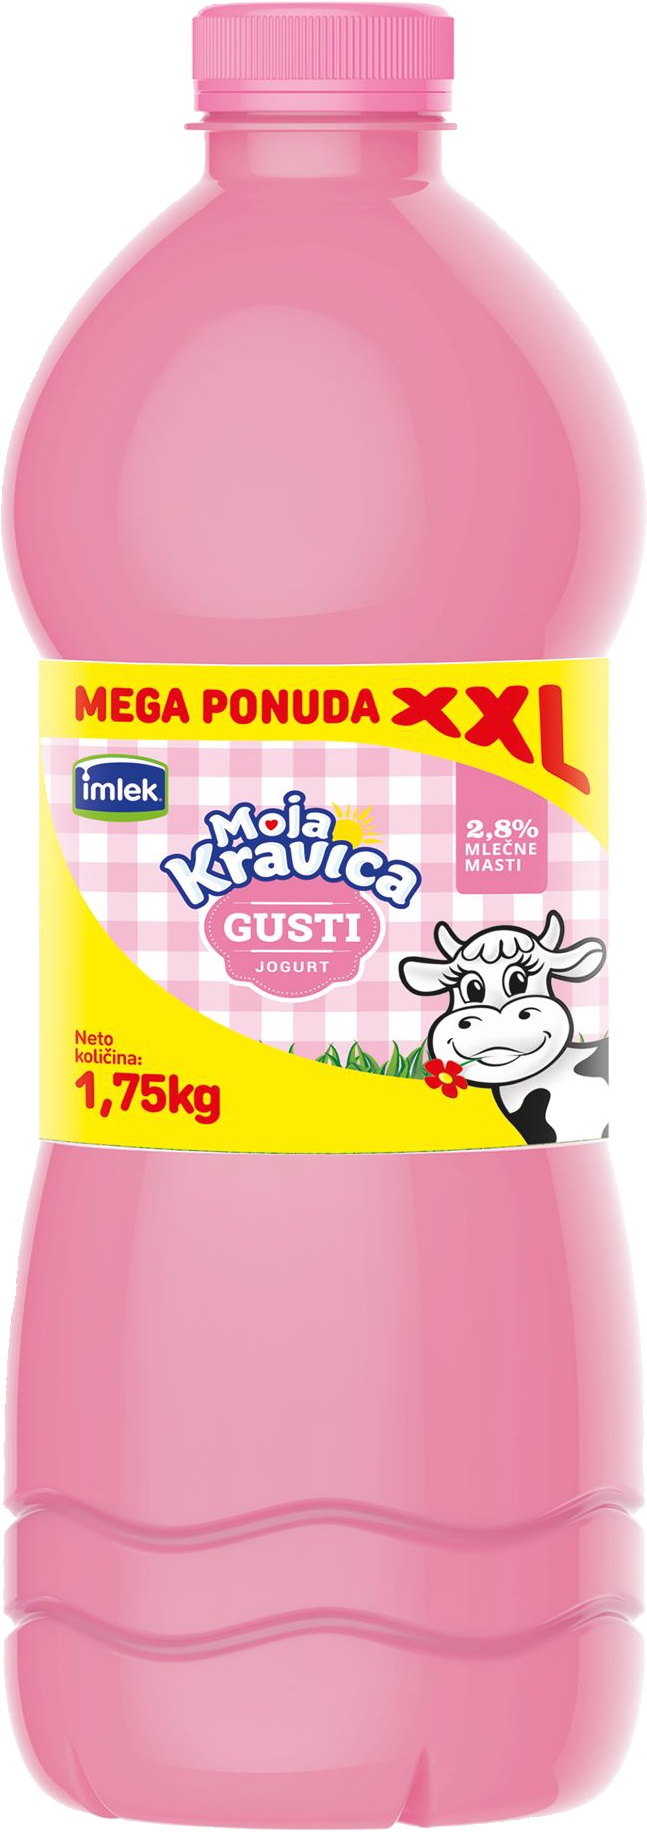 Slika za Jogurt gusti XXL Moja Kravica 1.75kg